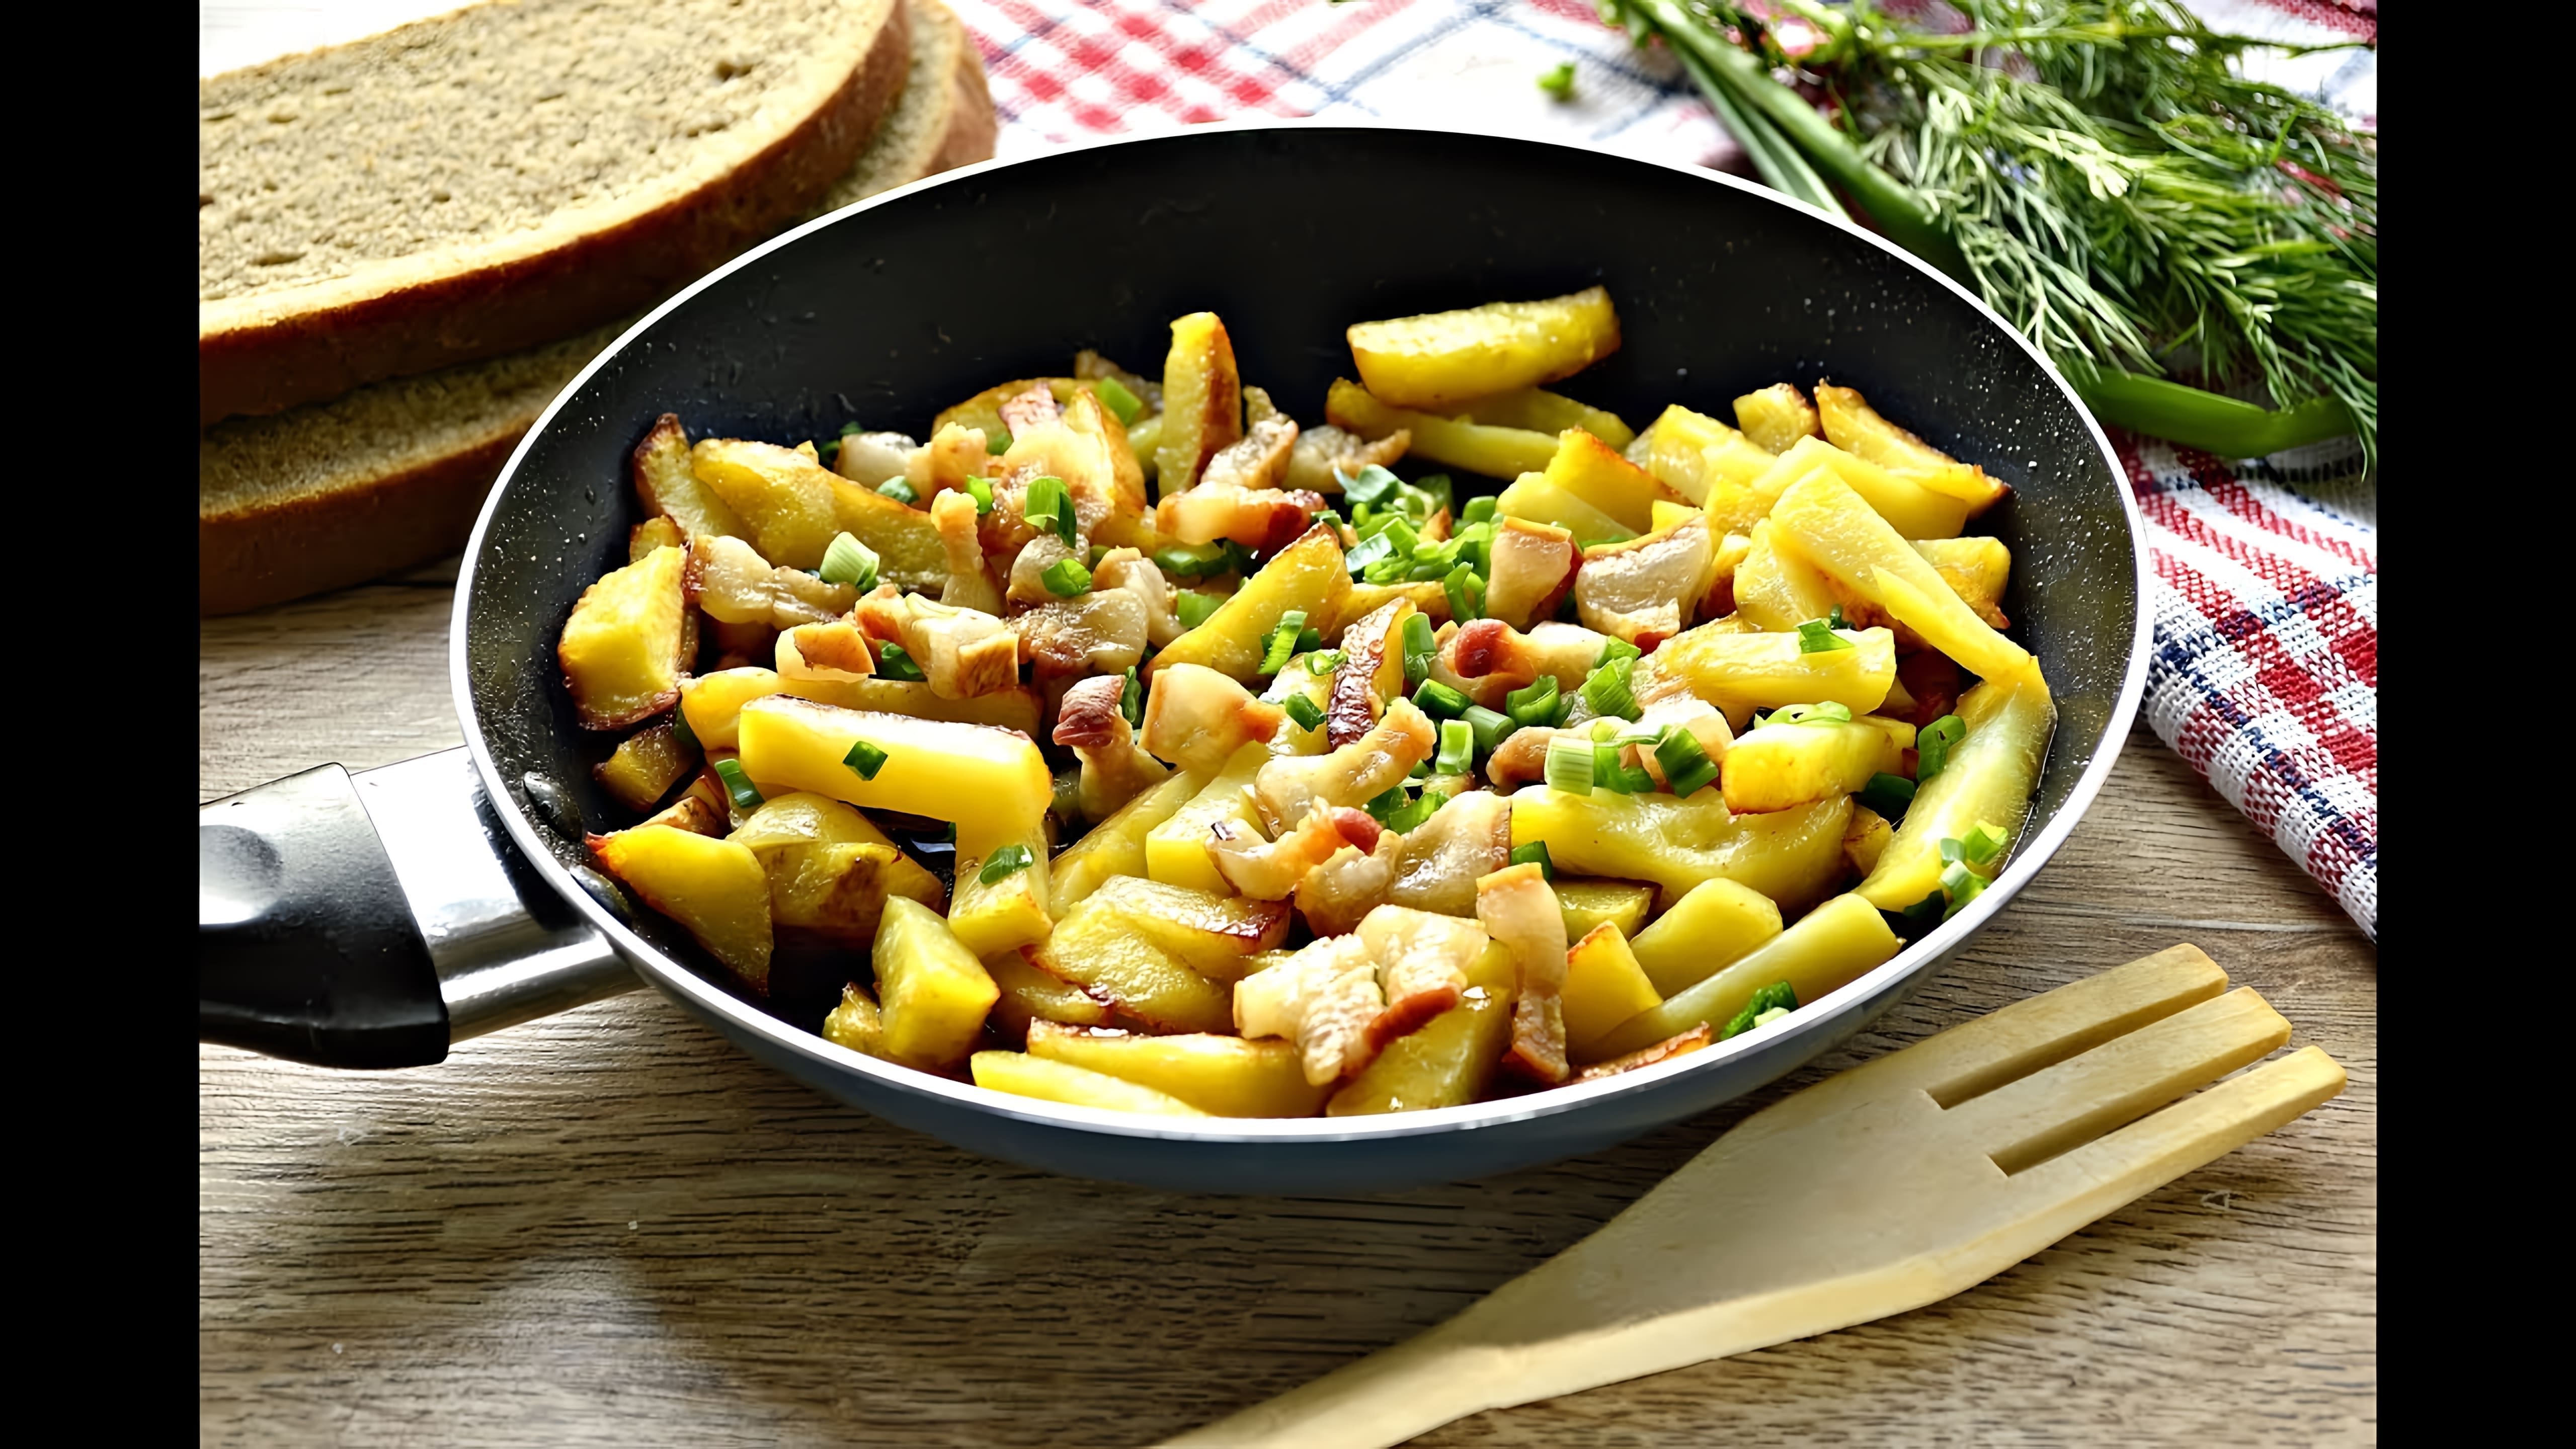 Жареная картошка с салом на сковороде - это вкусное и простое блюдо, которое можно приготовить в домашних условиях